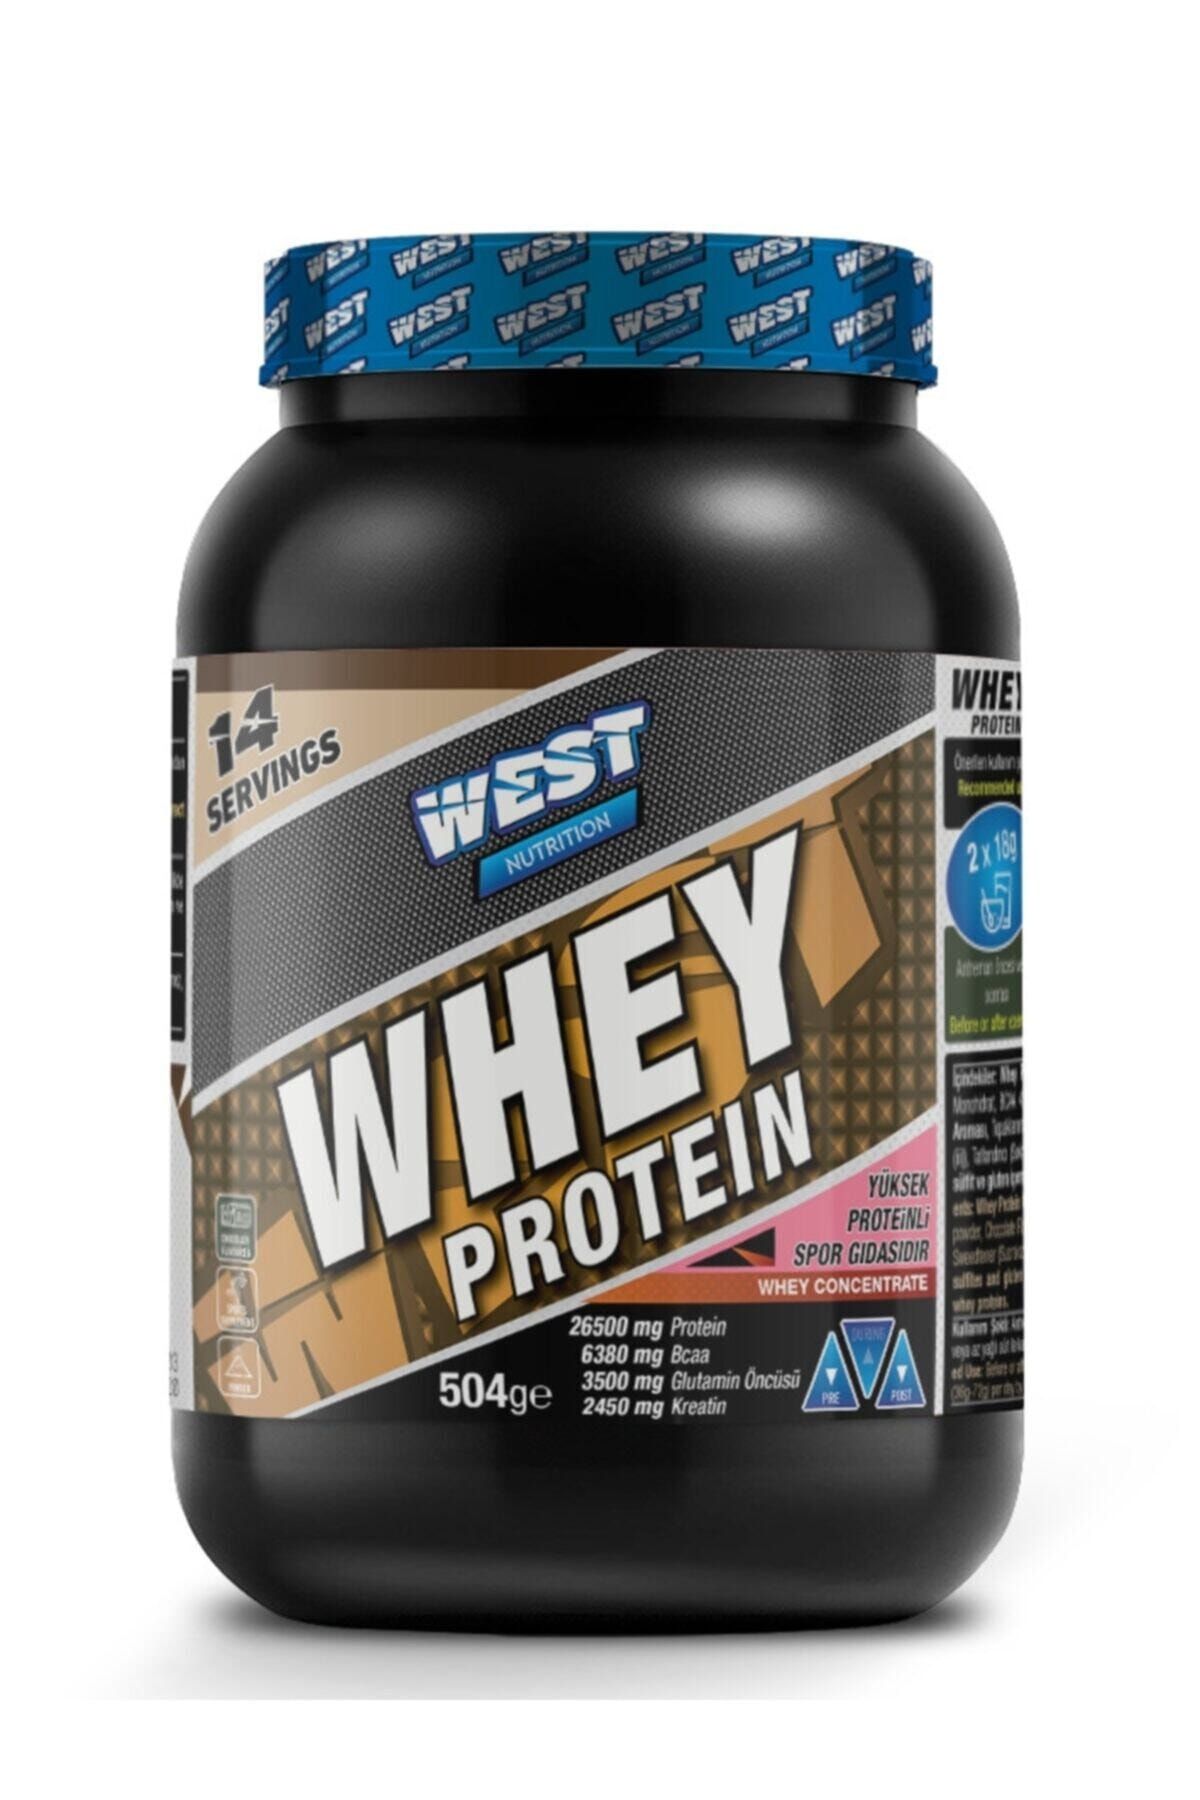 West Nutrition Whey Protein Tozu 504 Gr 14 Servis Çikolata Aromalı